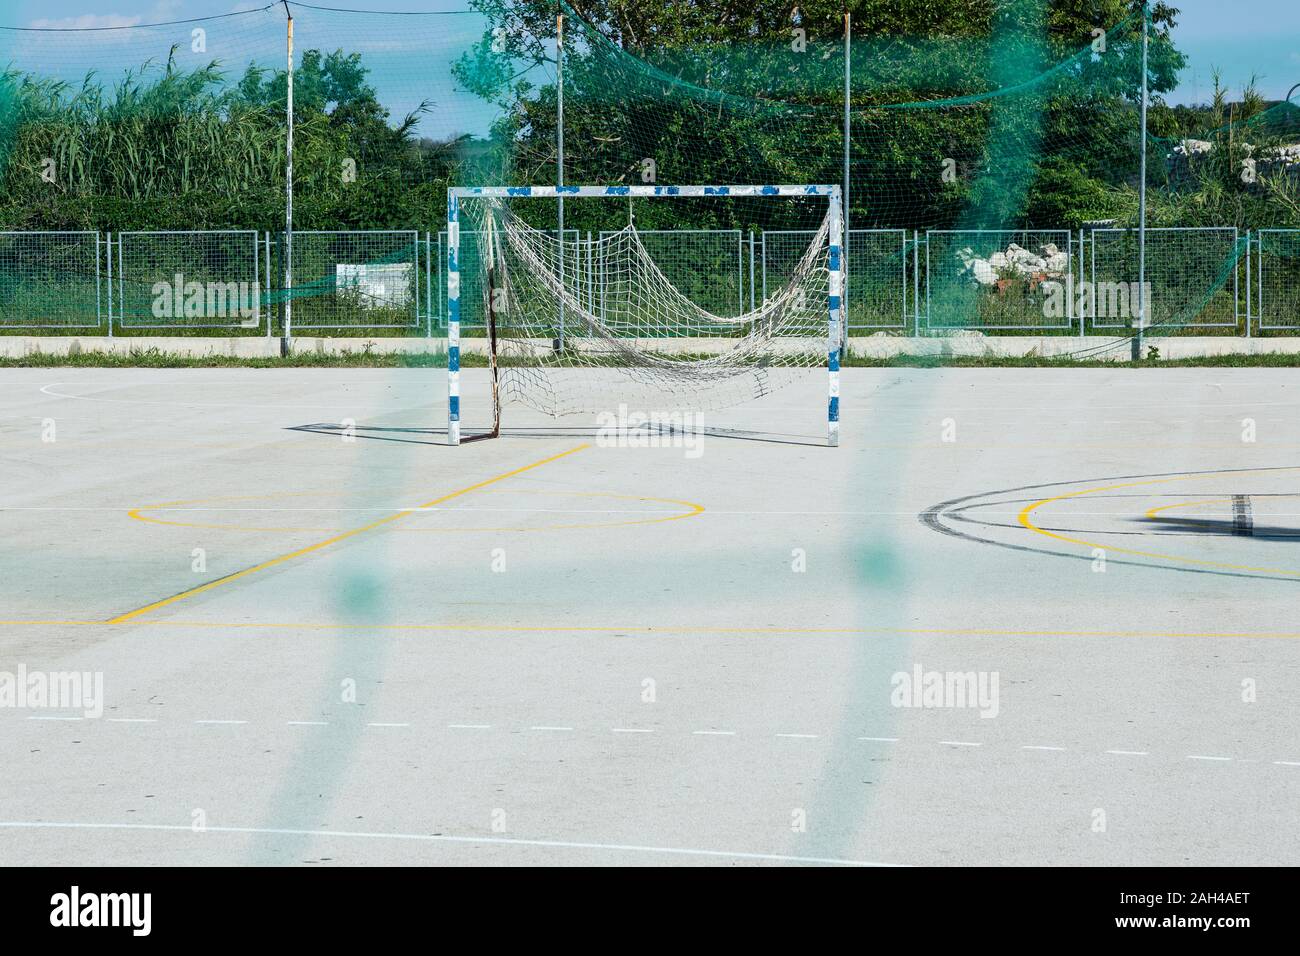 Croatia, Nin, Soccer goal standing in empty schoolyard Stock Photo